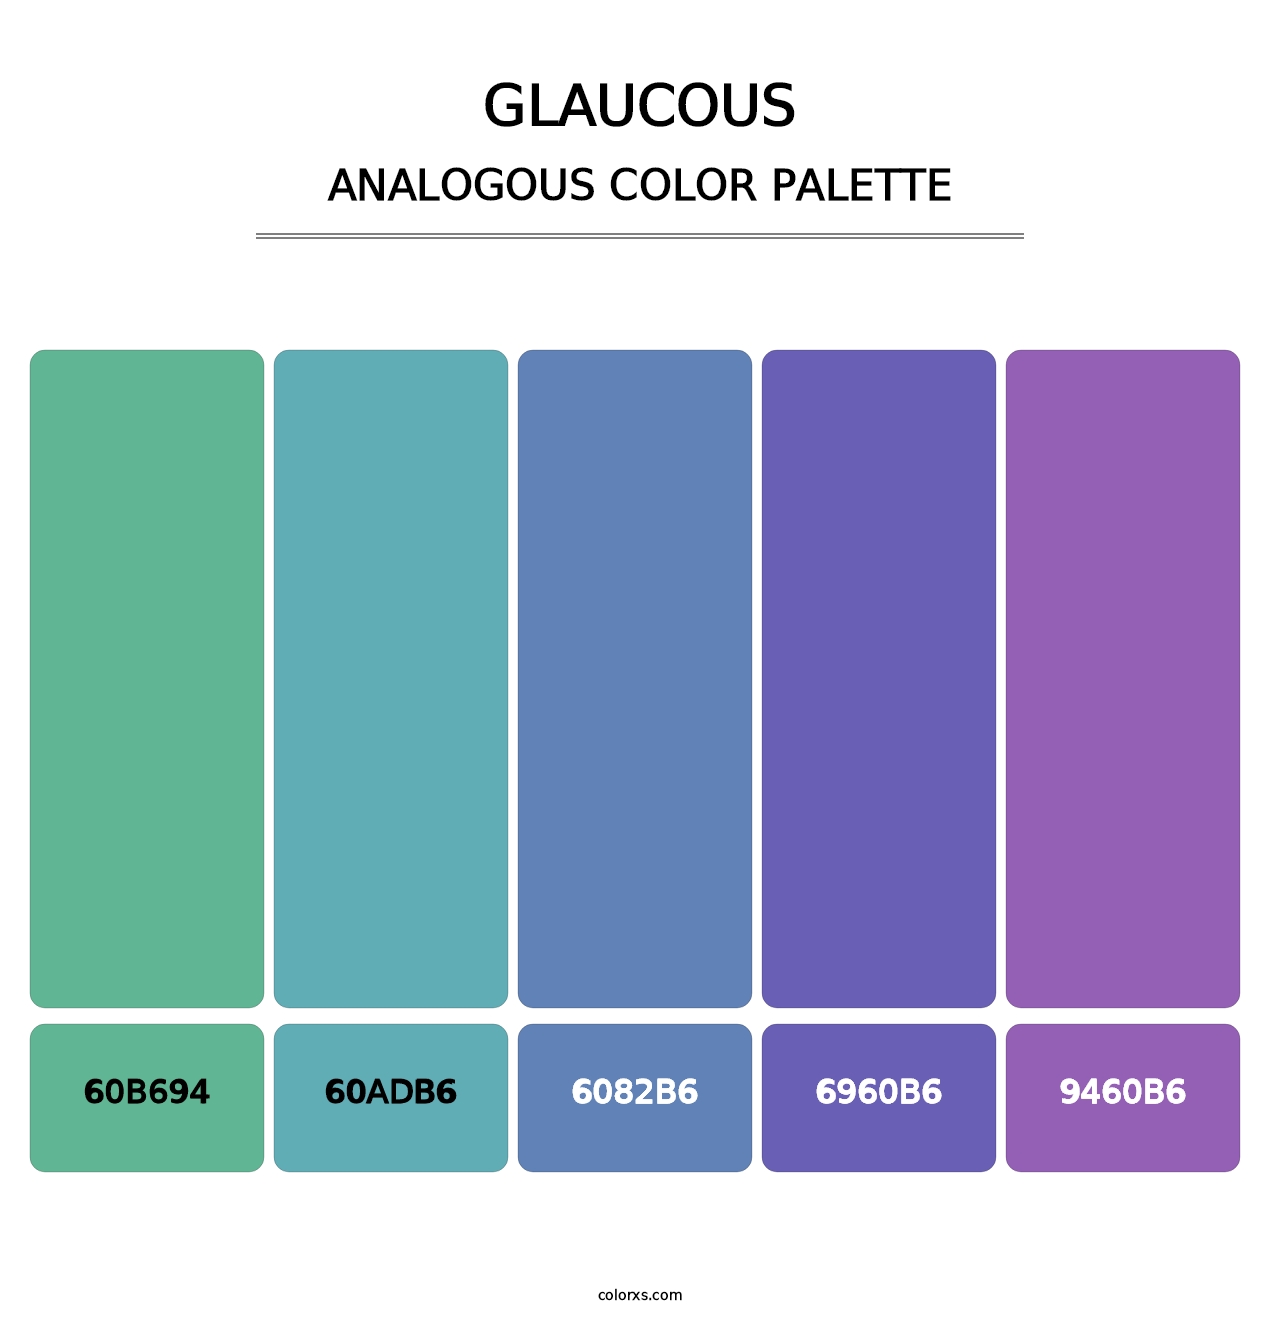 Glaucous - Analogous Color Palette